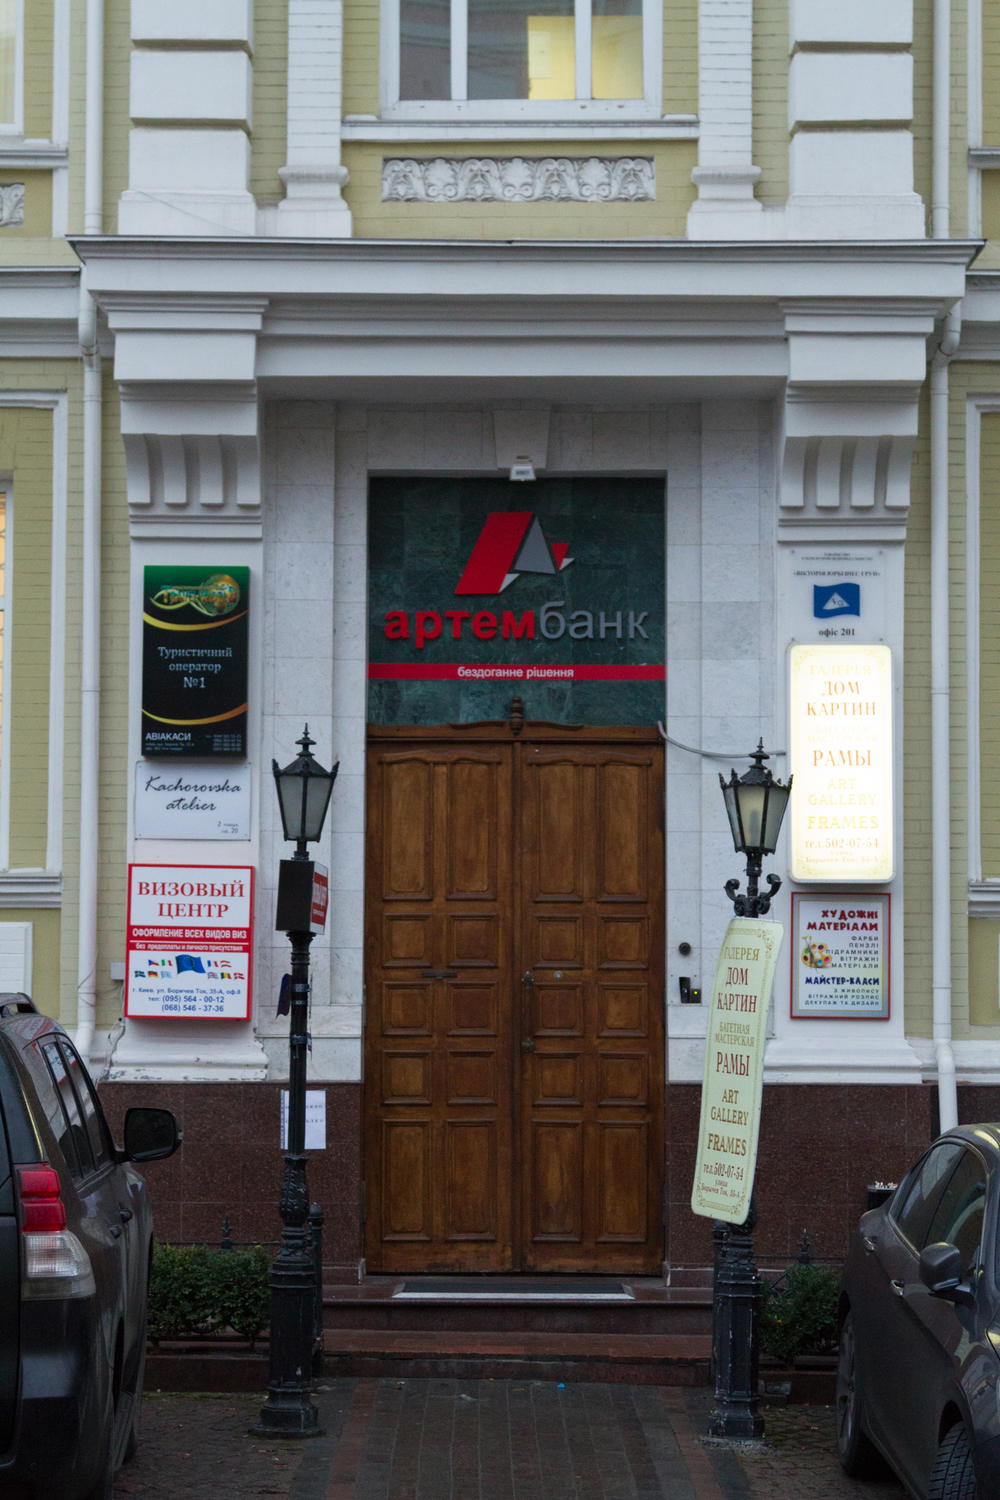 Kacharovska atelier расположено на Подоле.